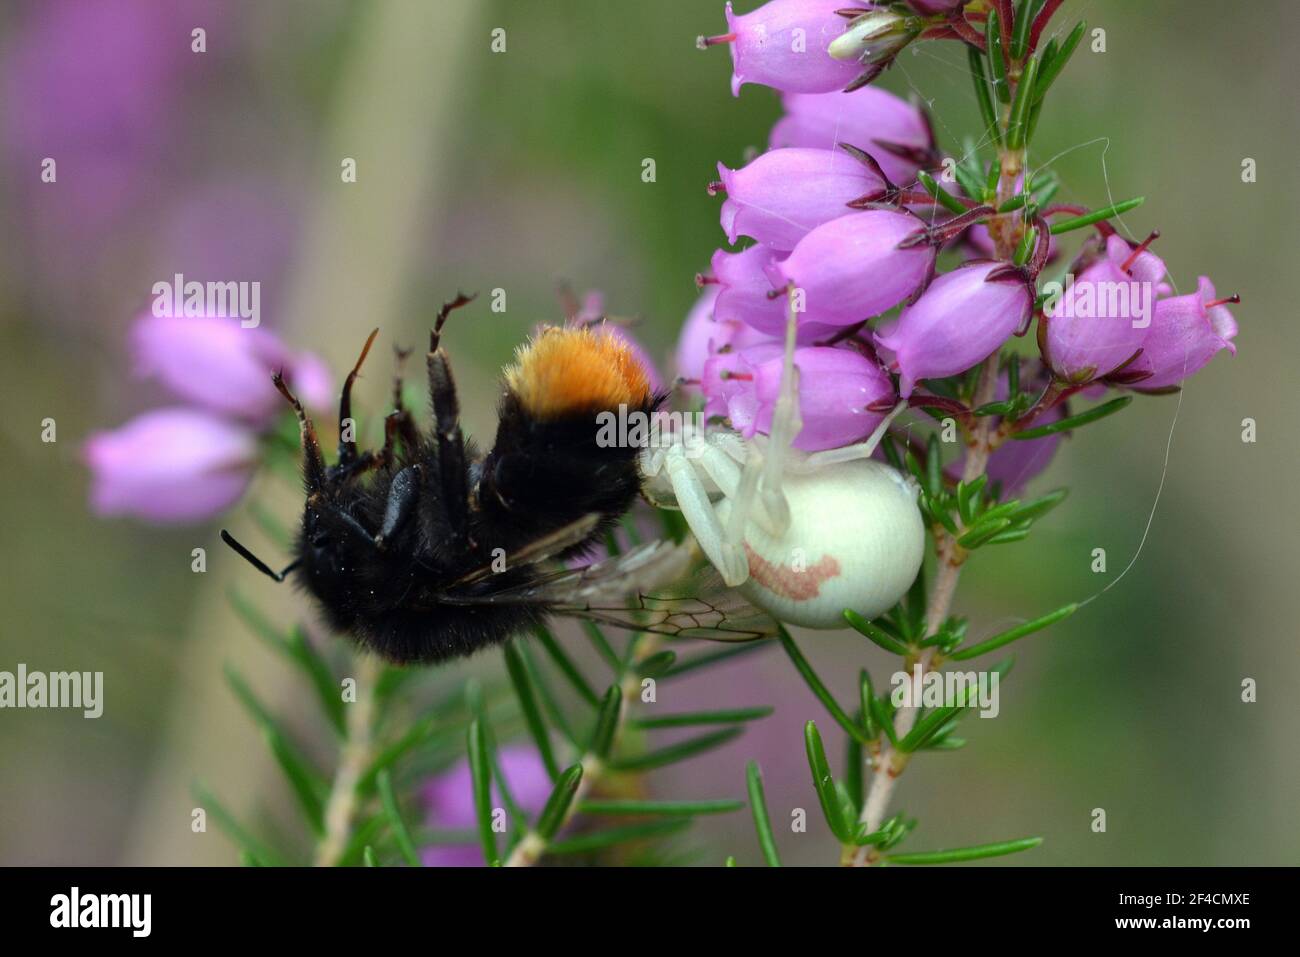 Francia, Aquitania, il ragno di granchio a caccia sul belvedere nascosto in fiori di erica, cattura la sua preda con le sue lunghe gambe anteriori. Foto Stock